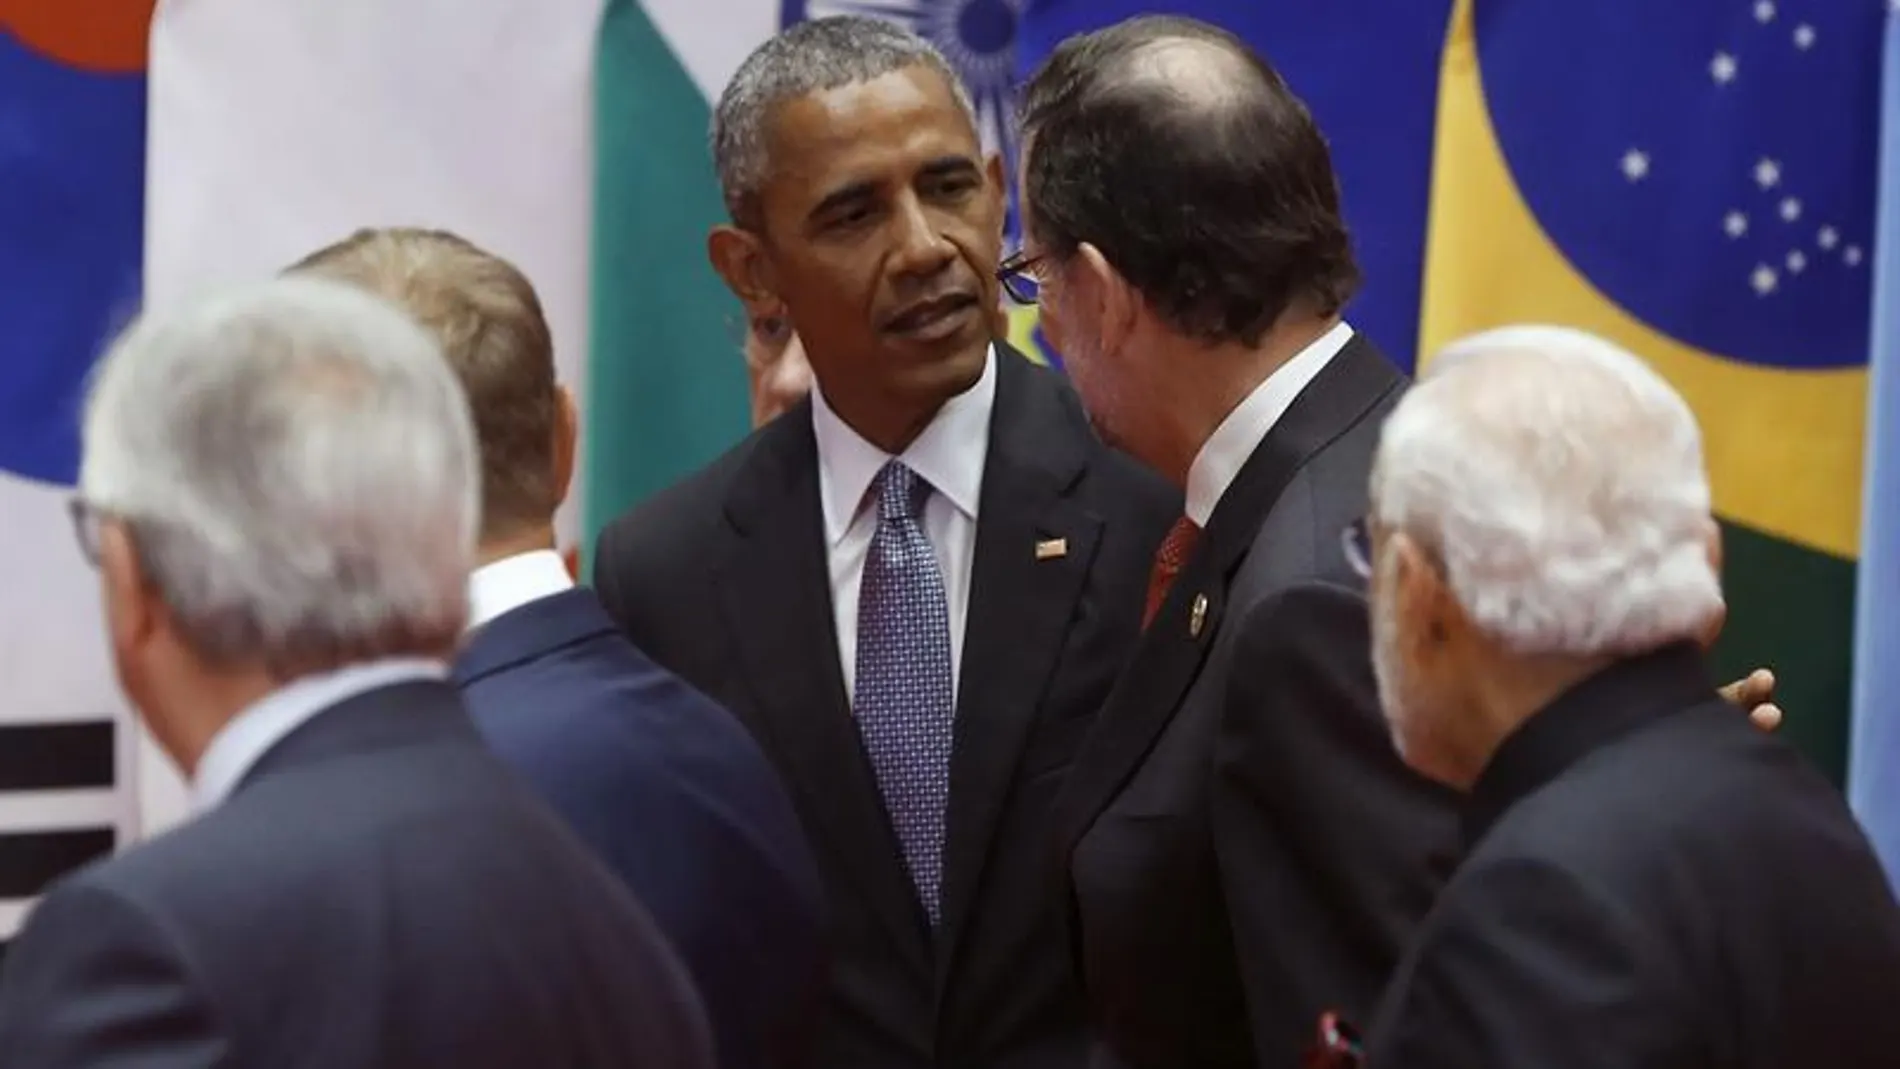 Momento en el que Rajoy y Obama se saludan durante la cumbre del G20